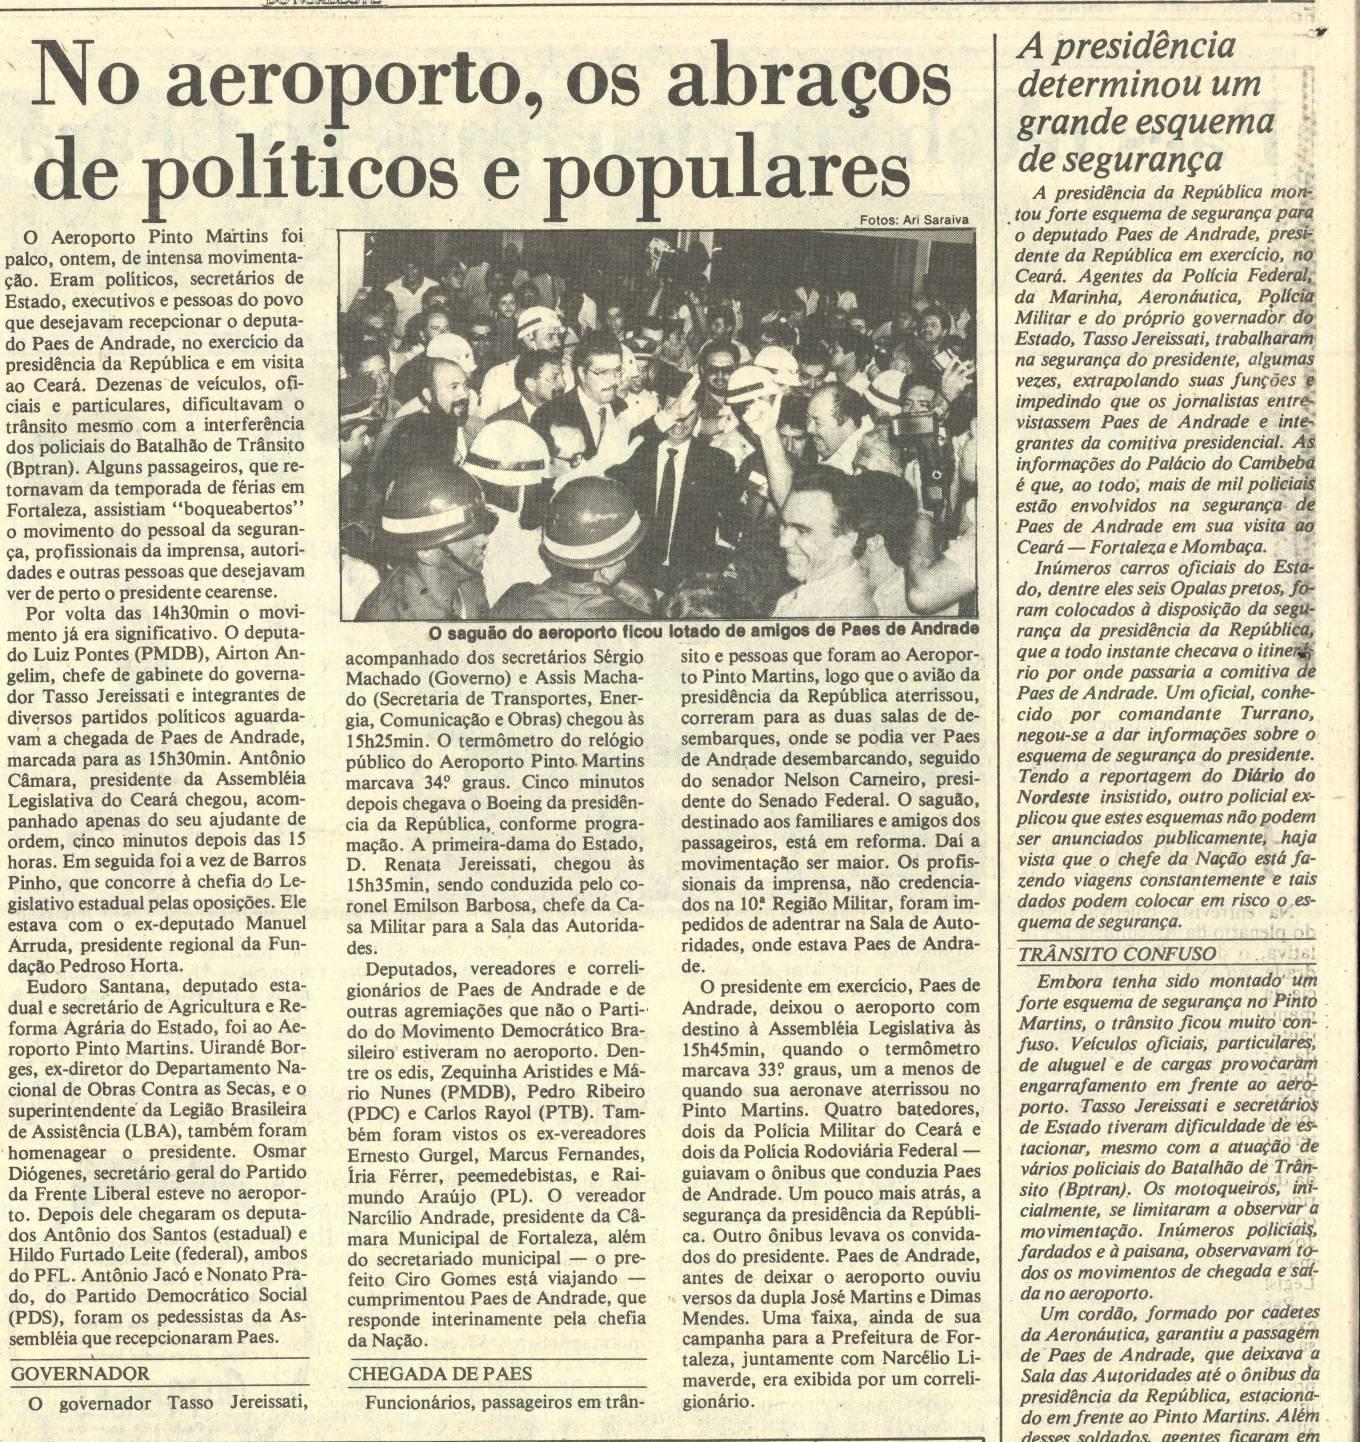 Reportagem de fevereiro de 1989 do Diário do Nordeste